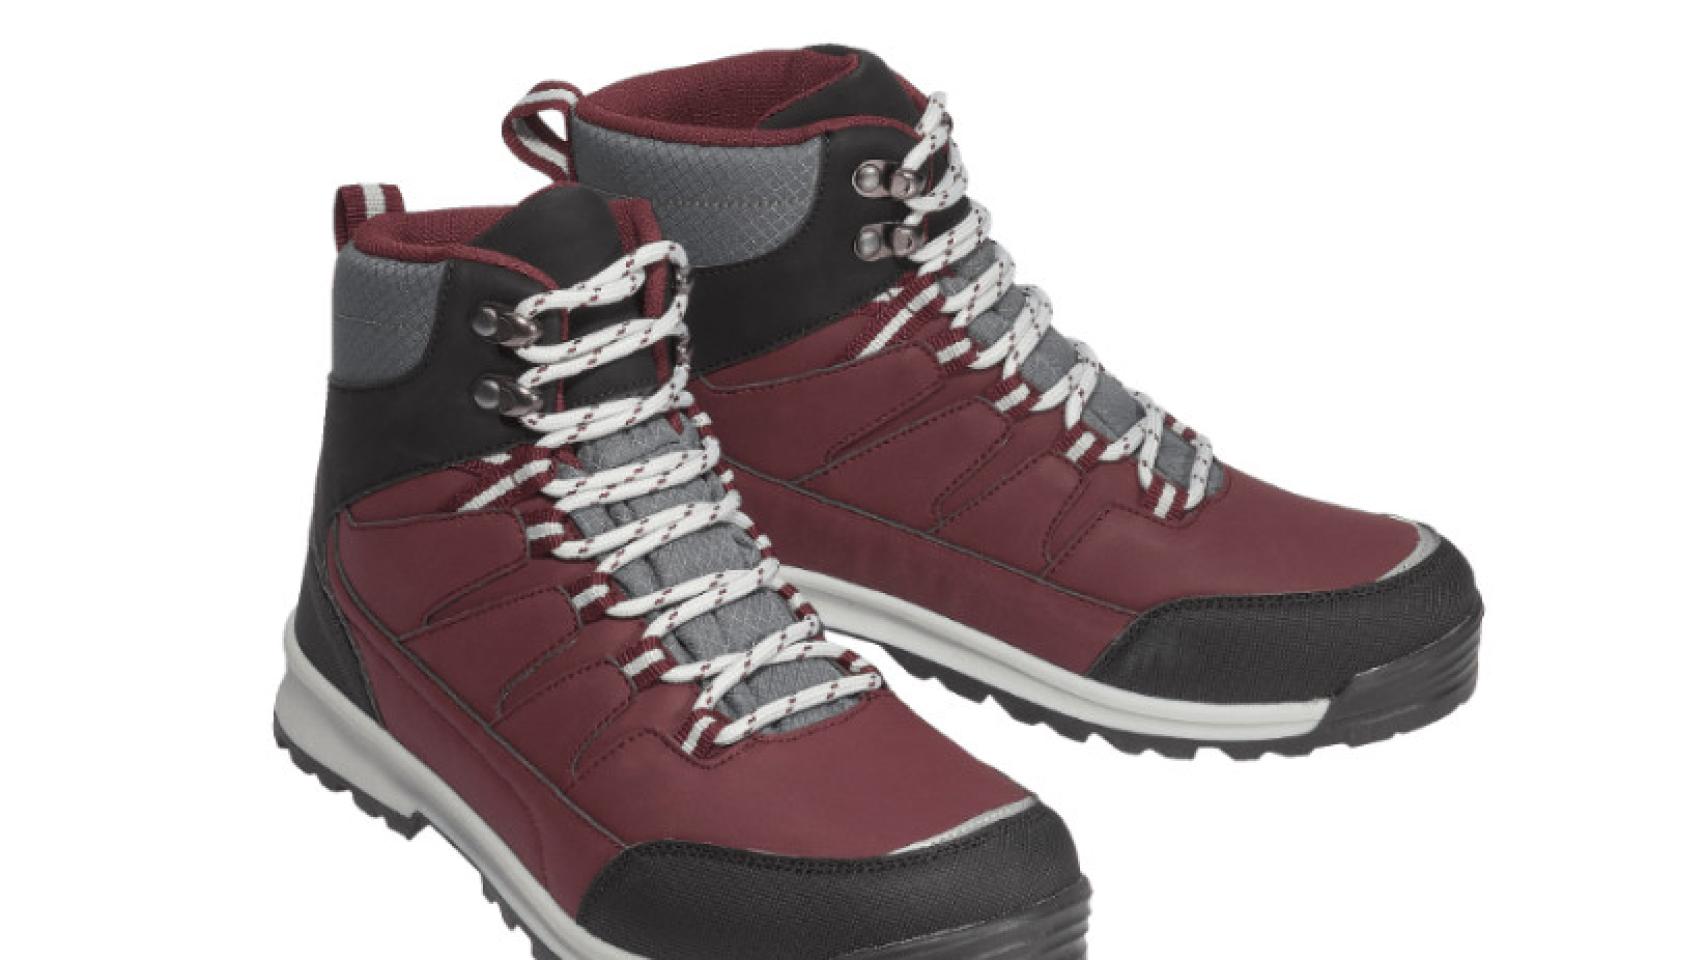 Las nuevas botas térmicas de Aldi que arrasan entre clientes: con efecto memoria por 21,99 euros